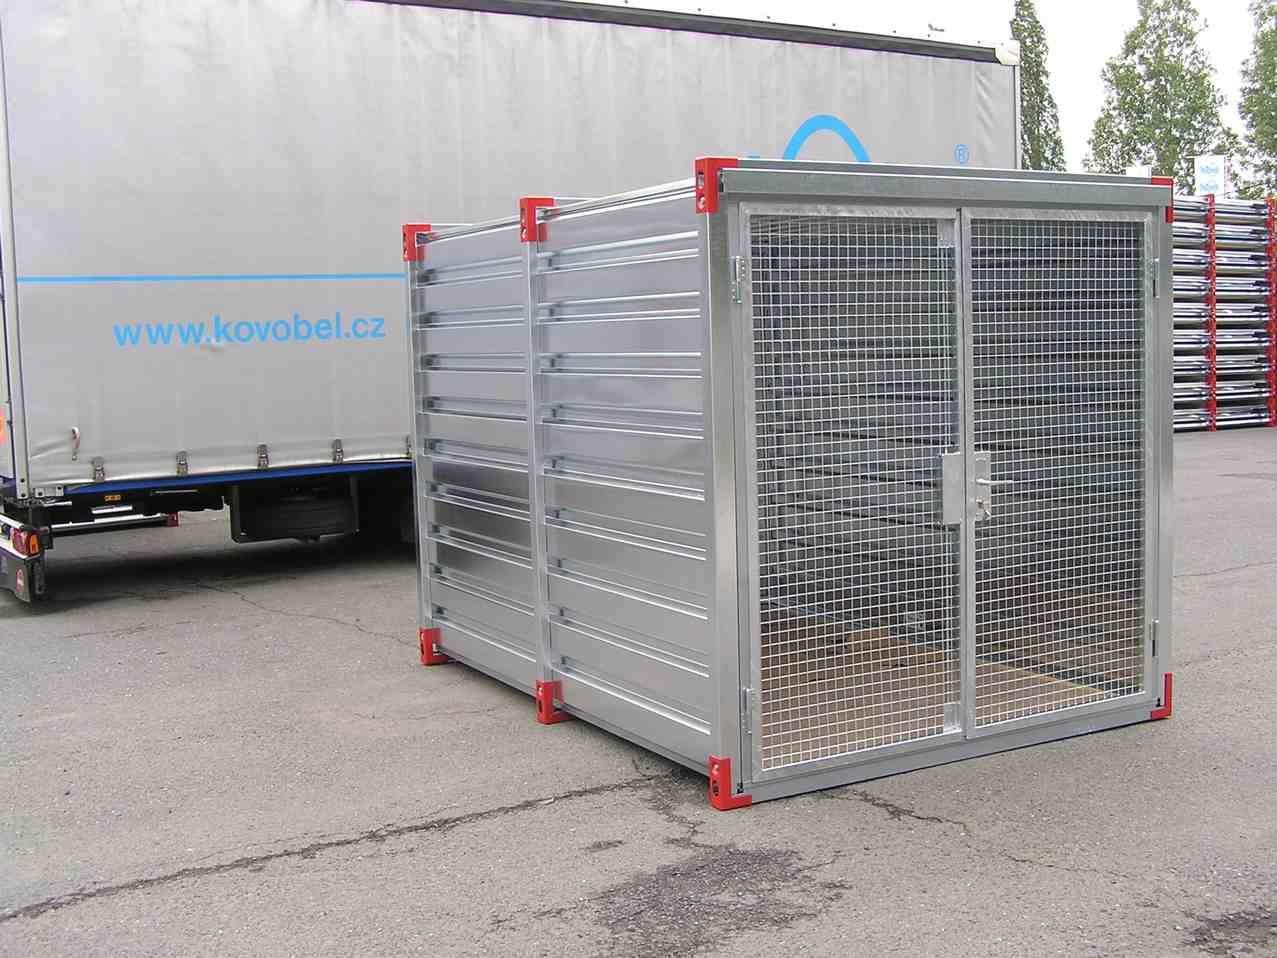 Container mesh wire doors